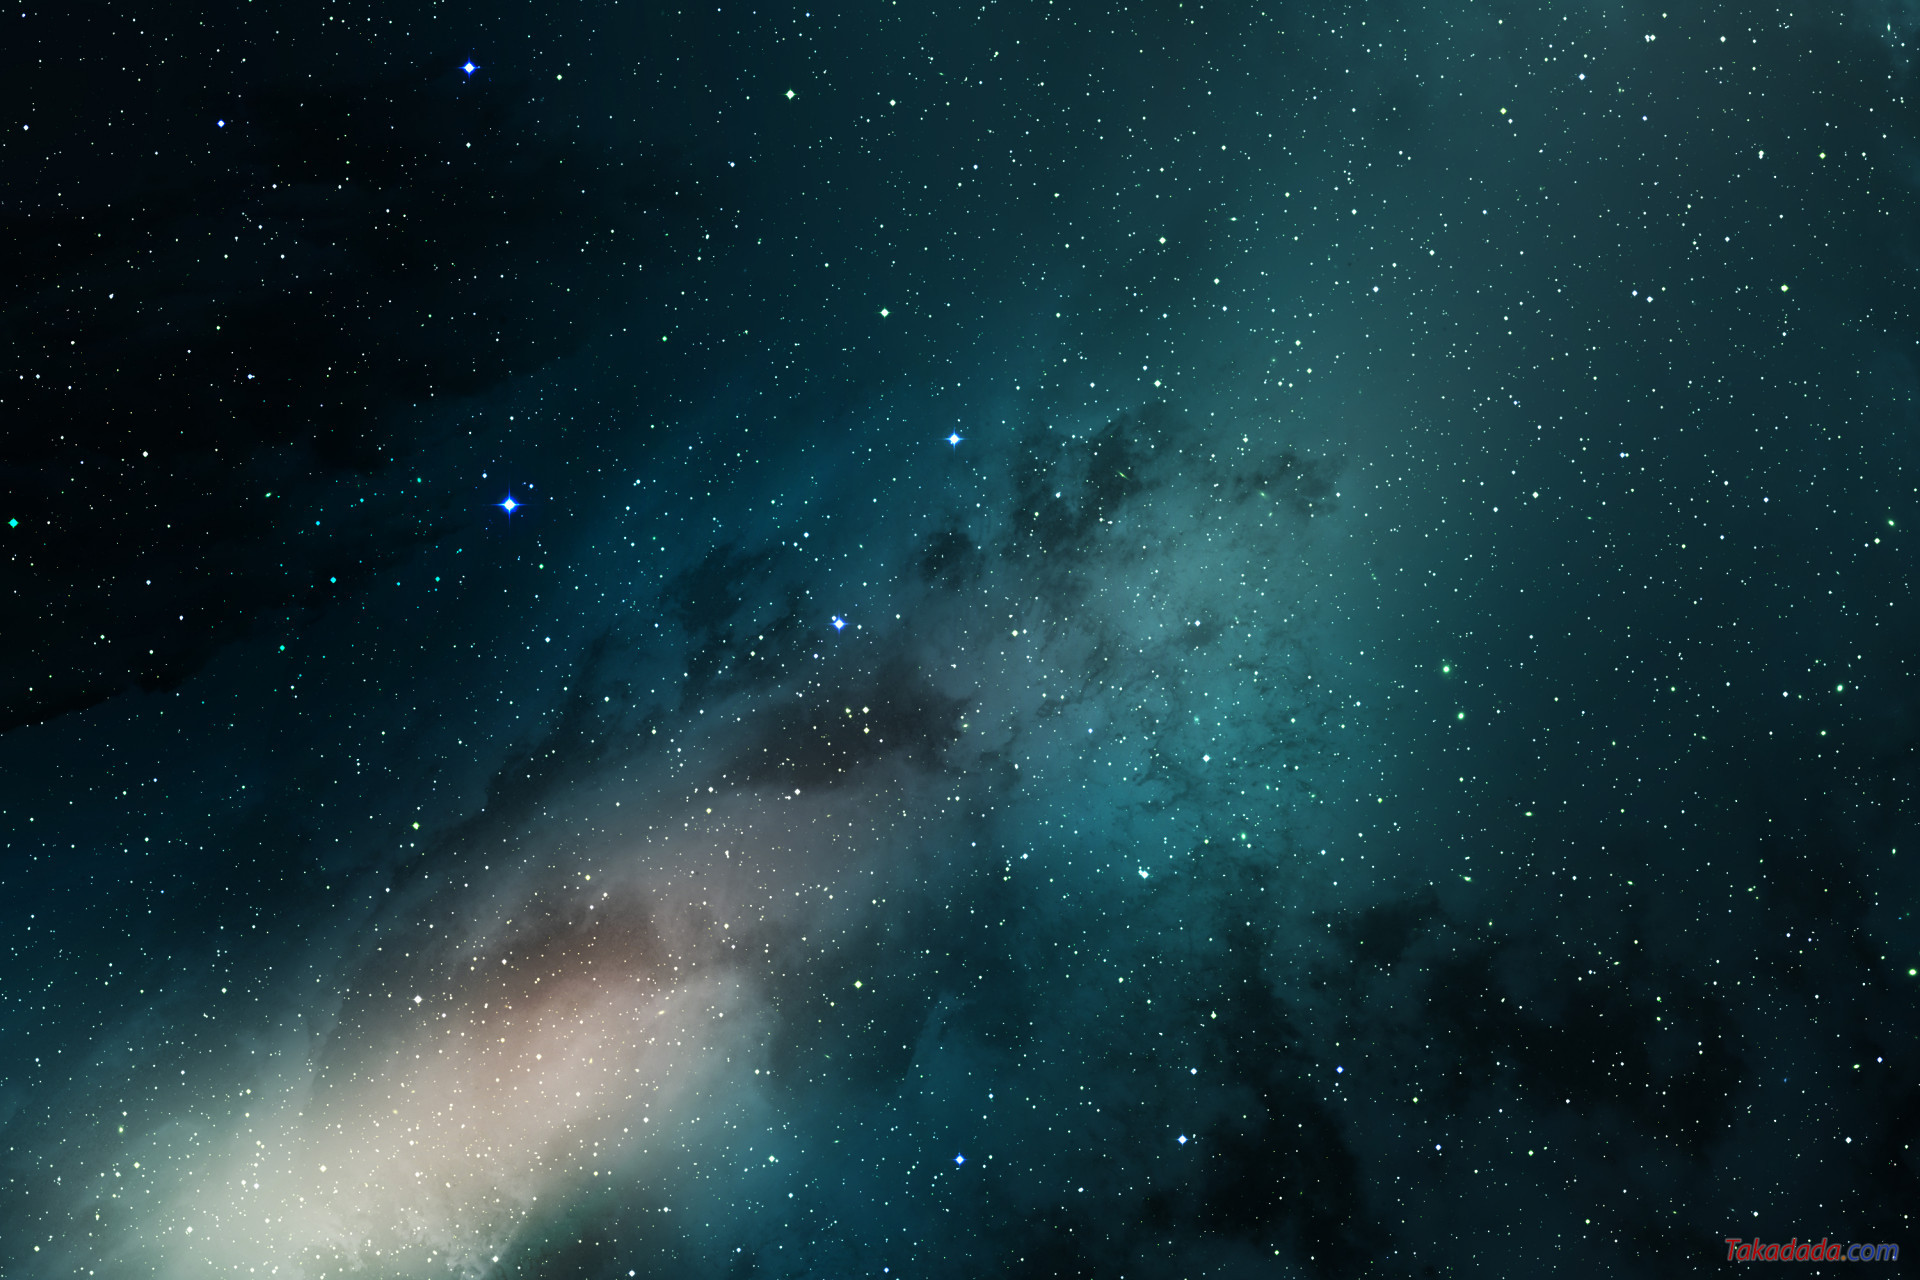 Chào mừng bạn đến với vũ trụ đầy bí ẩn và kì diệu! Hãy khám phá những hình ảnh đẹp tuyệt vời về các thiên hà, sao chổi và các vì sao từ xa. Mở ra trang mới của cuộc sống với tầm nhìn rộng lớn và khám phá những điều chưa từng thấy.